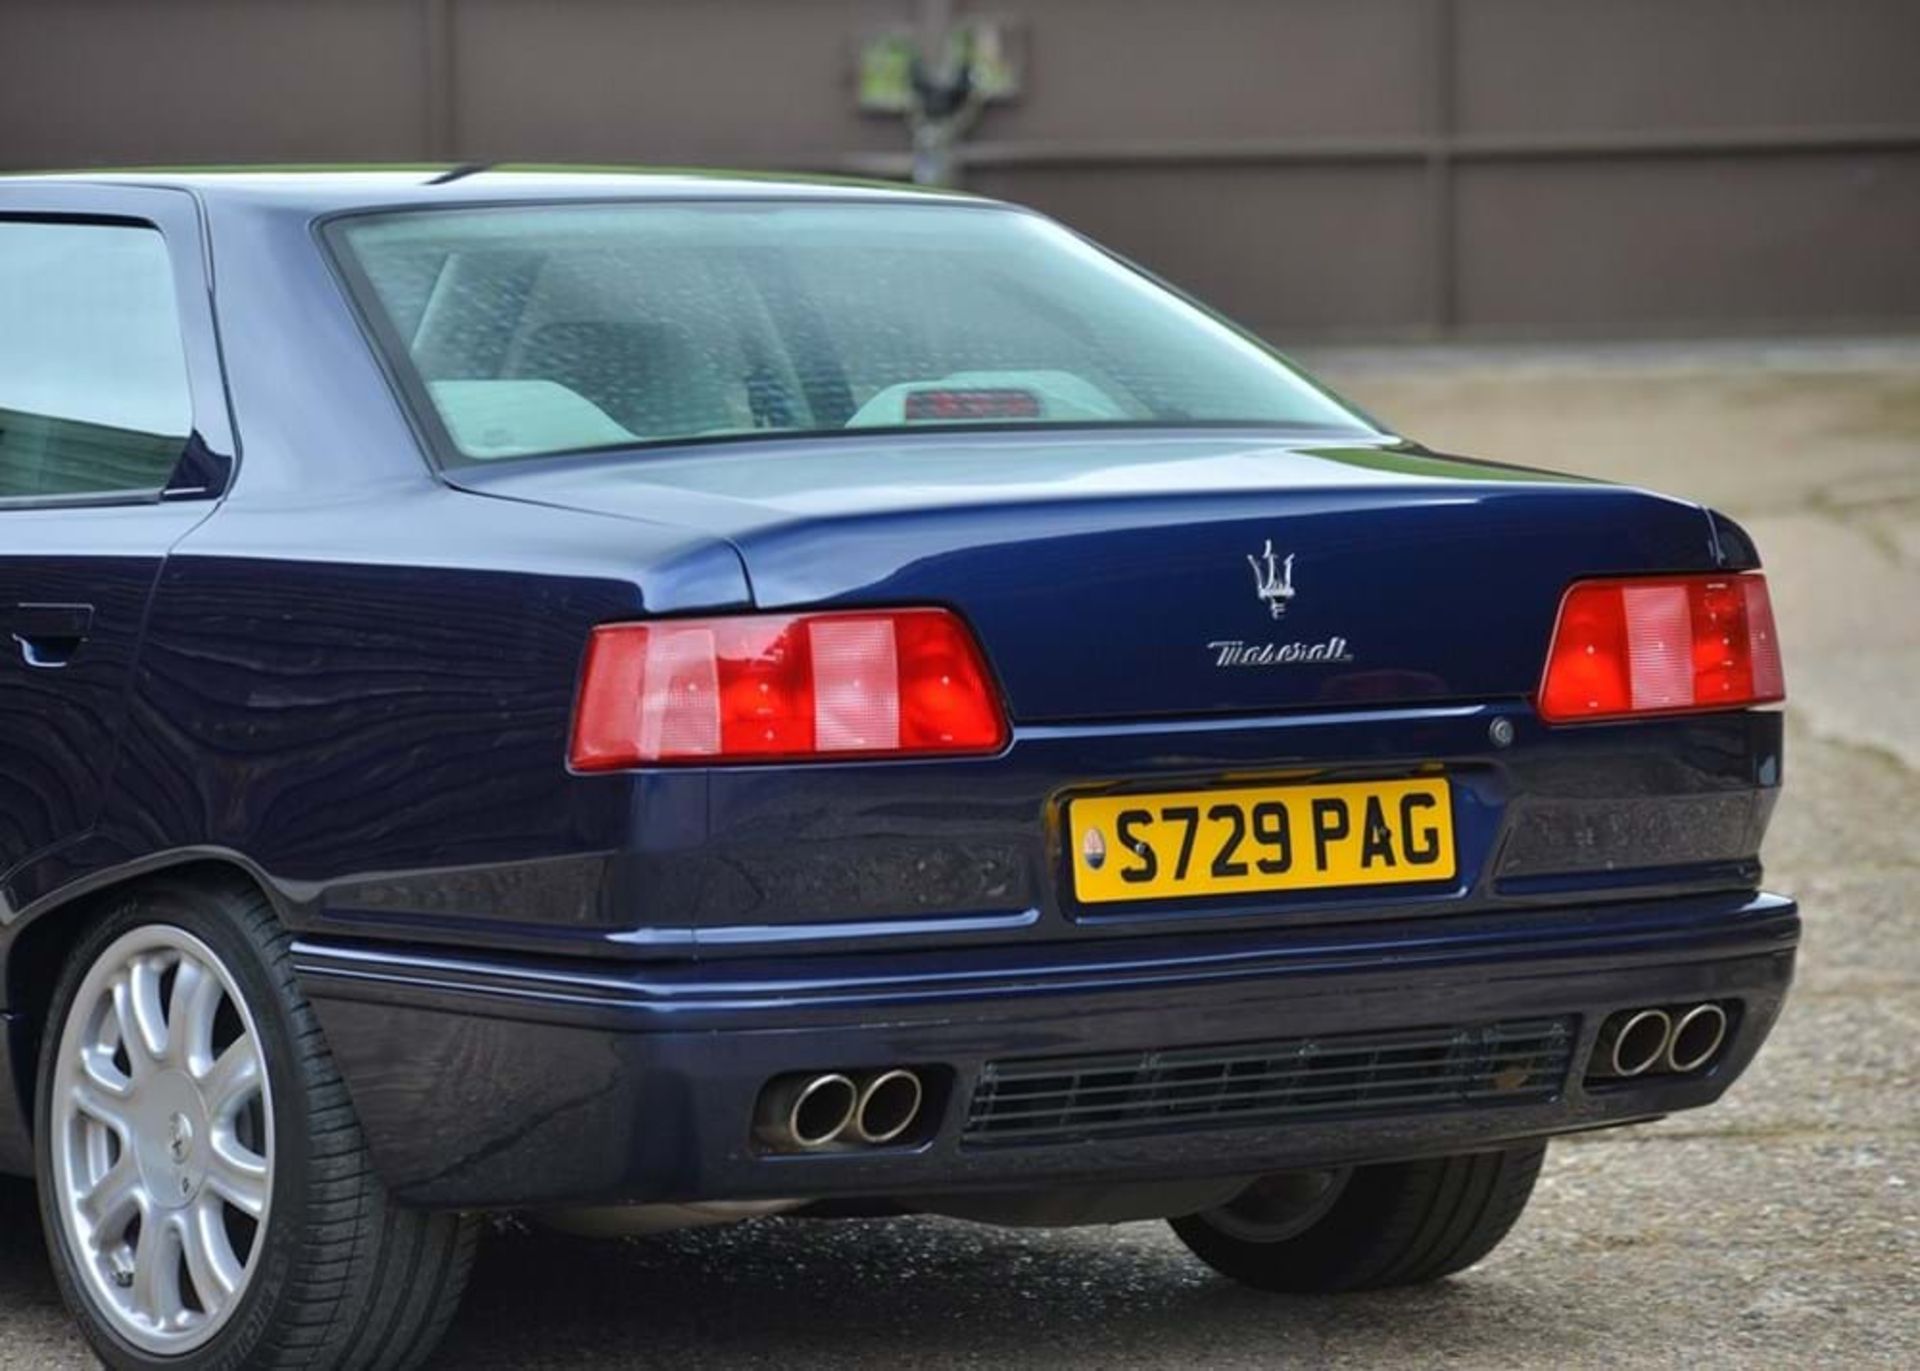 1999 Maserati Quattroporte IV Evoluzione (3.2 litre) - Image 2 of 10